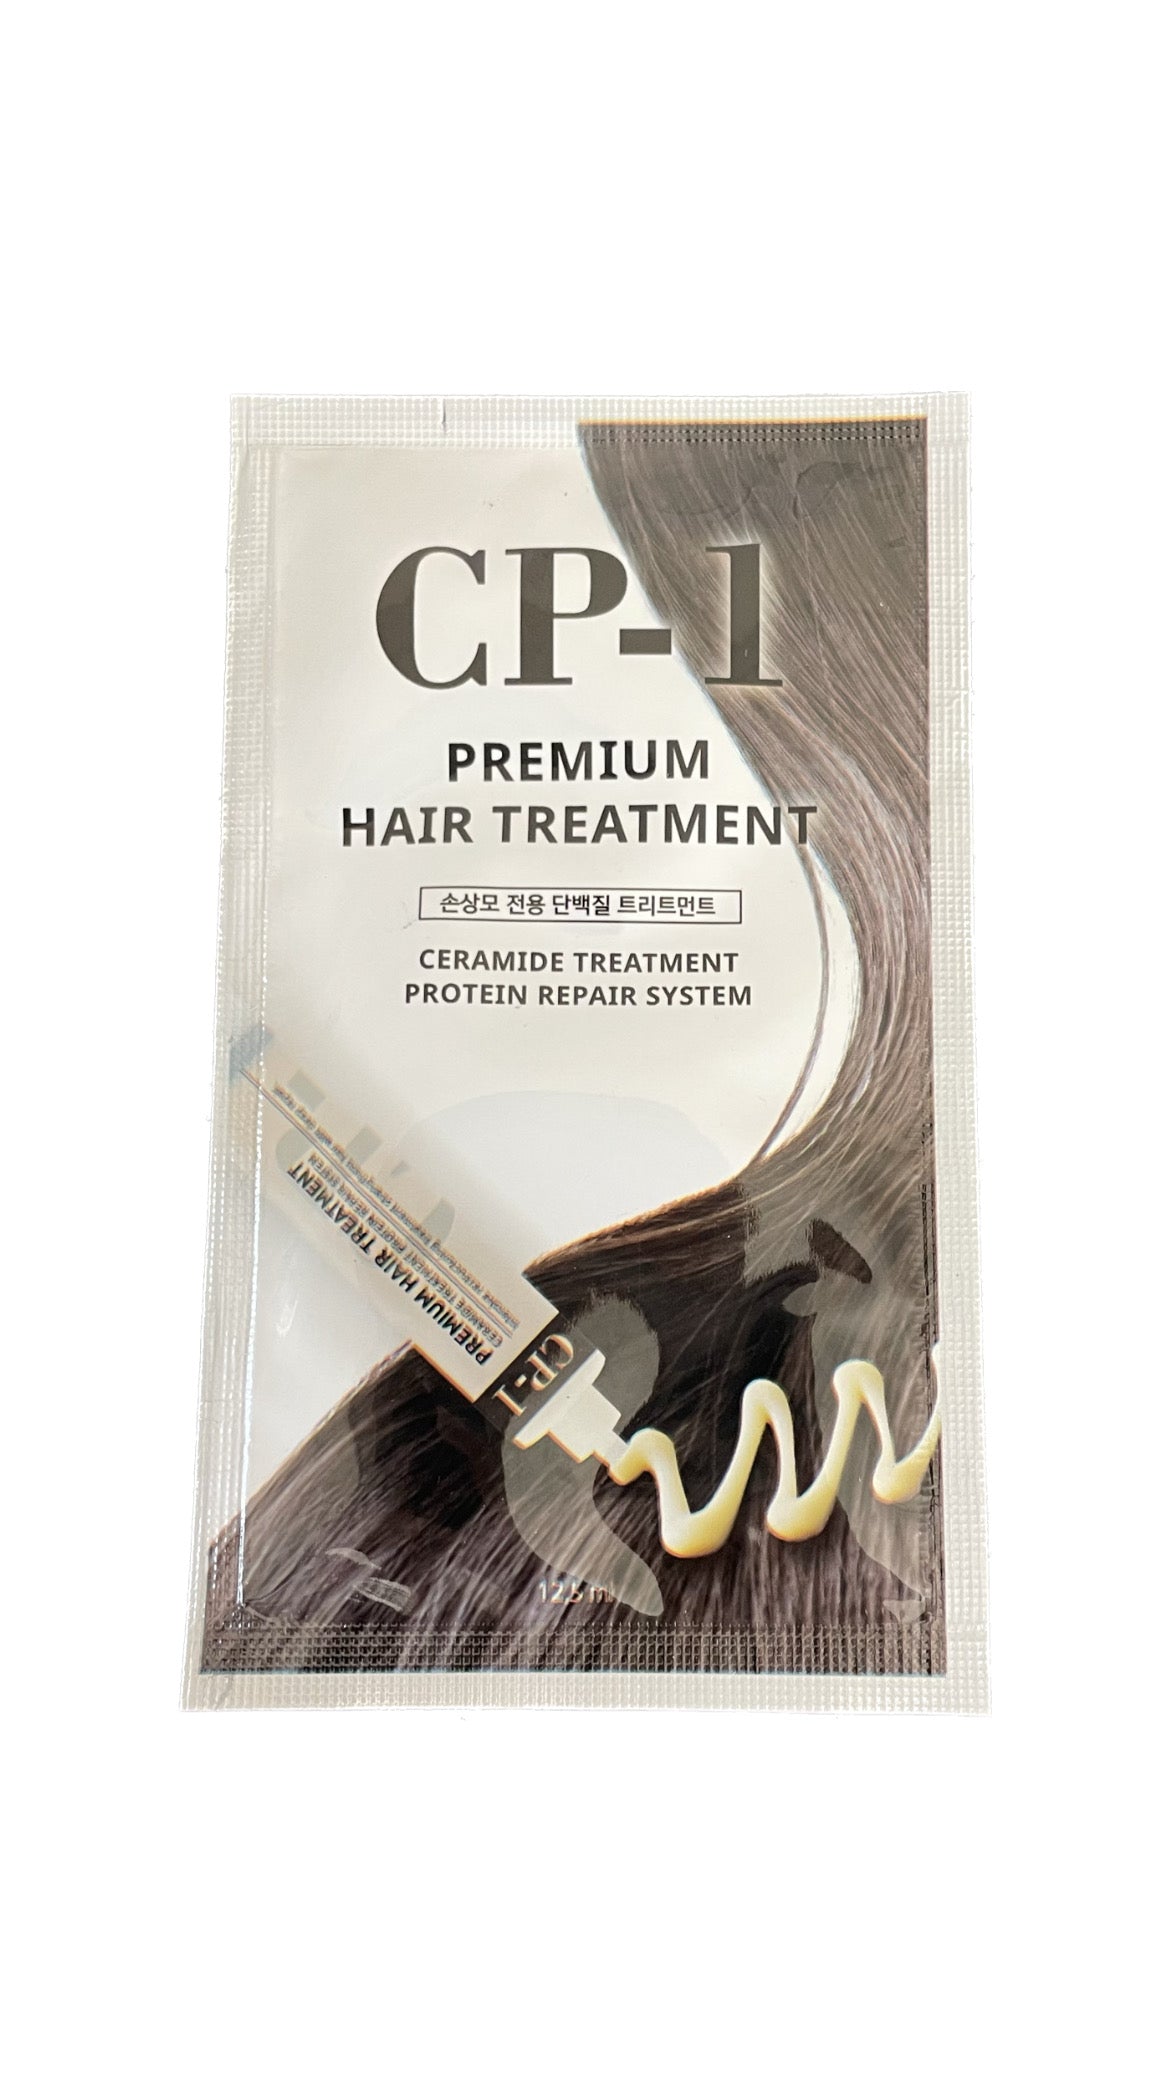 CP-1 premium hair treatment tester